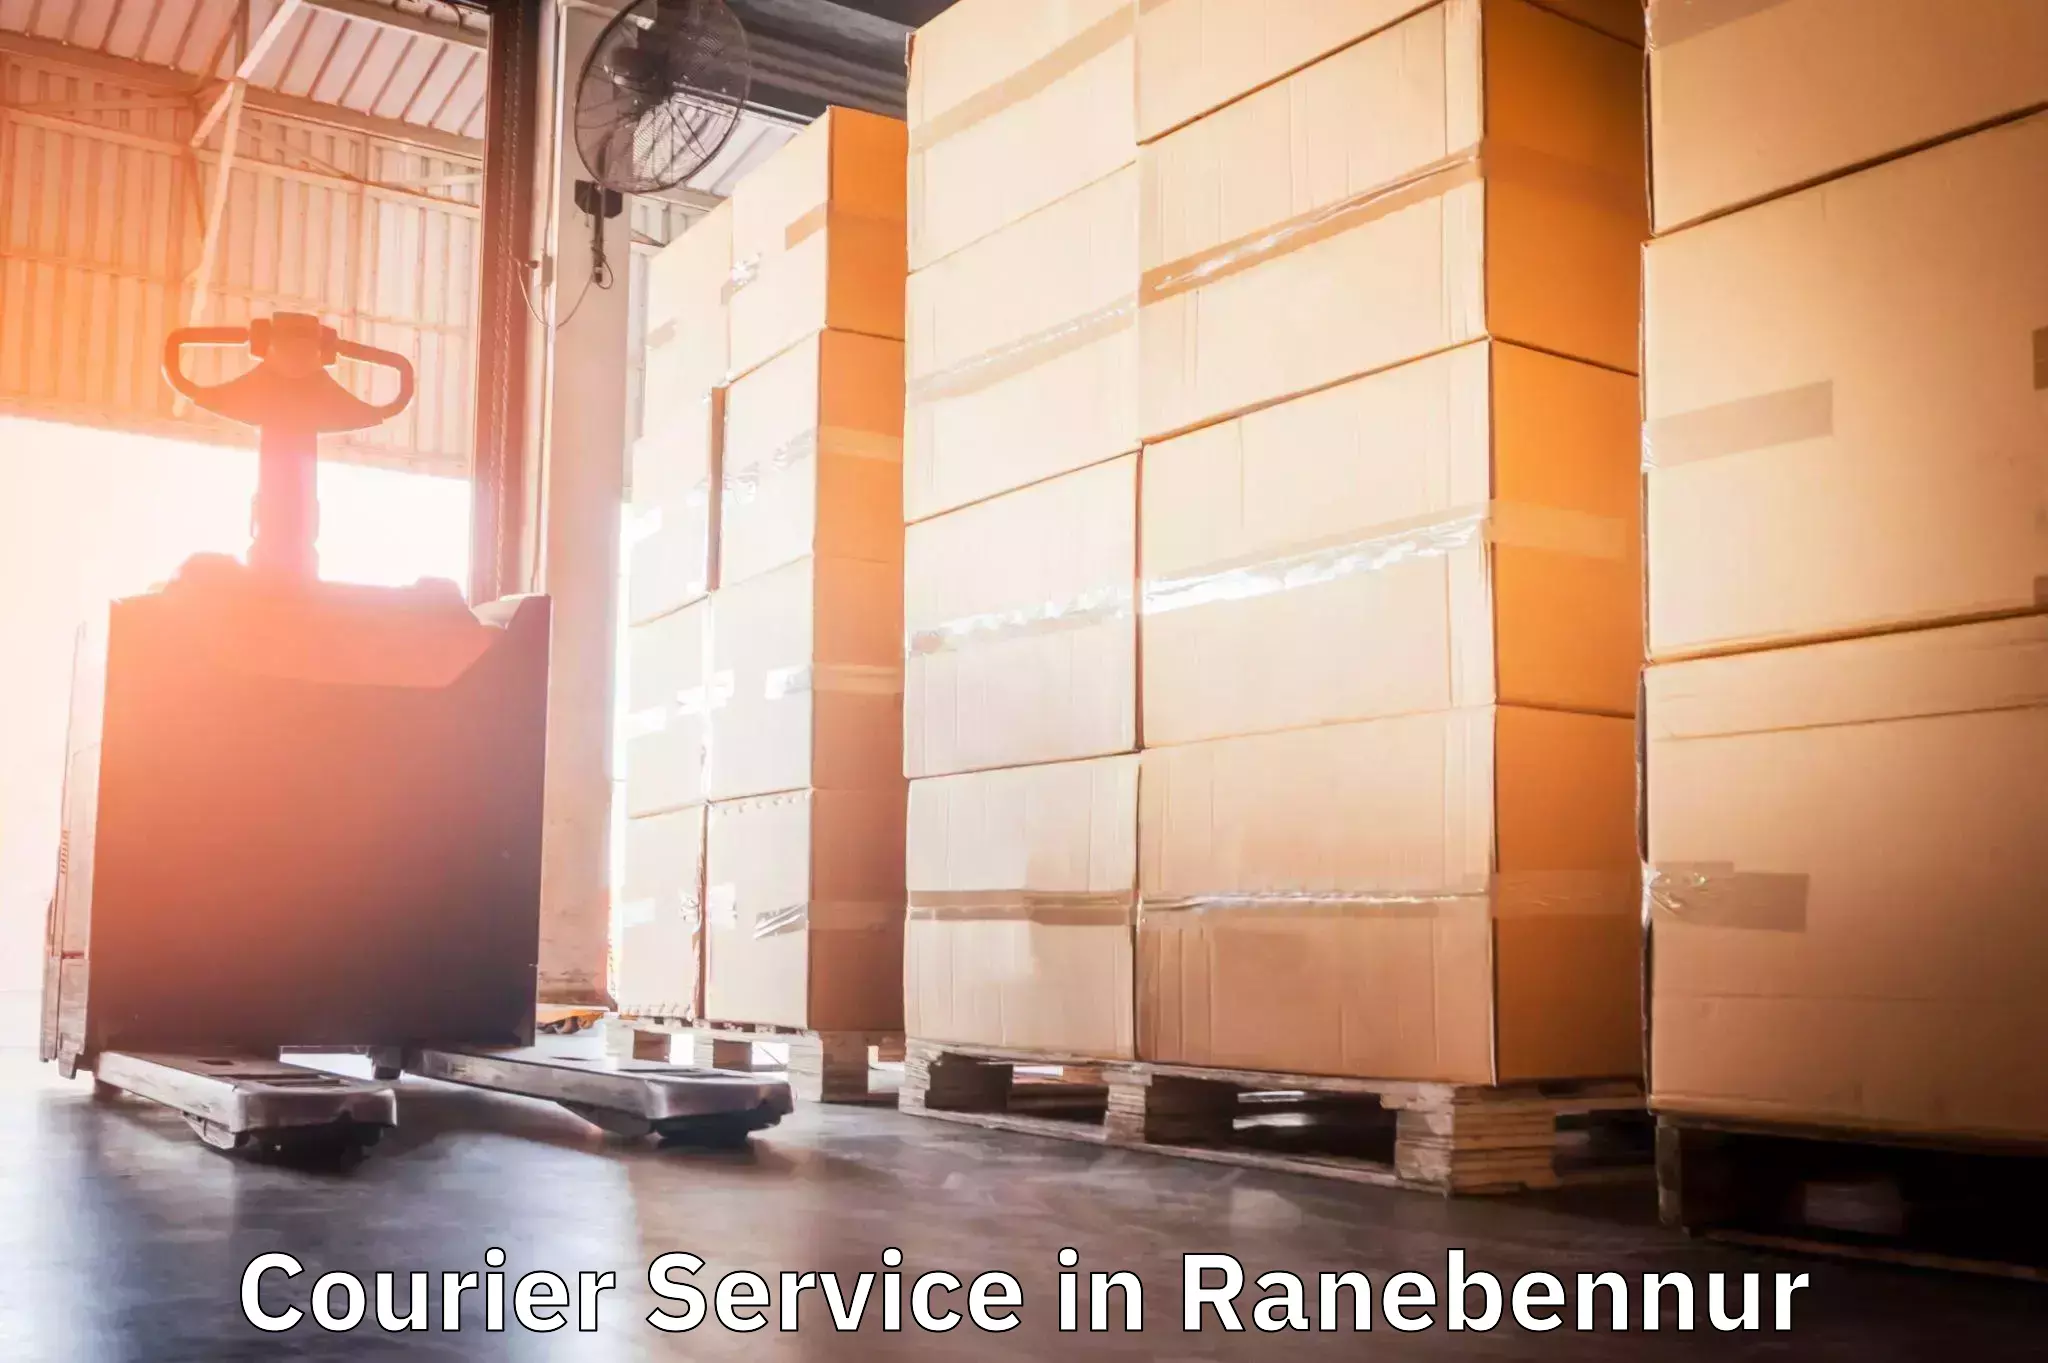 Comprehensive shipping strategies in Ranebennur